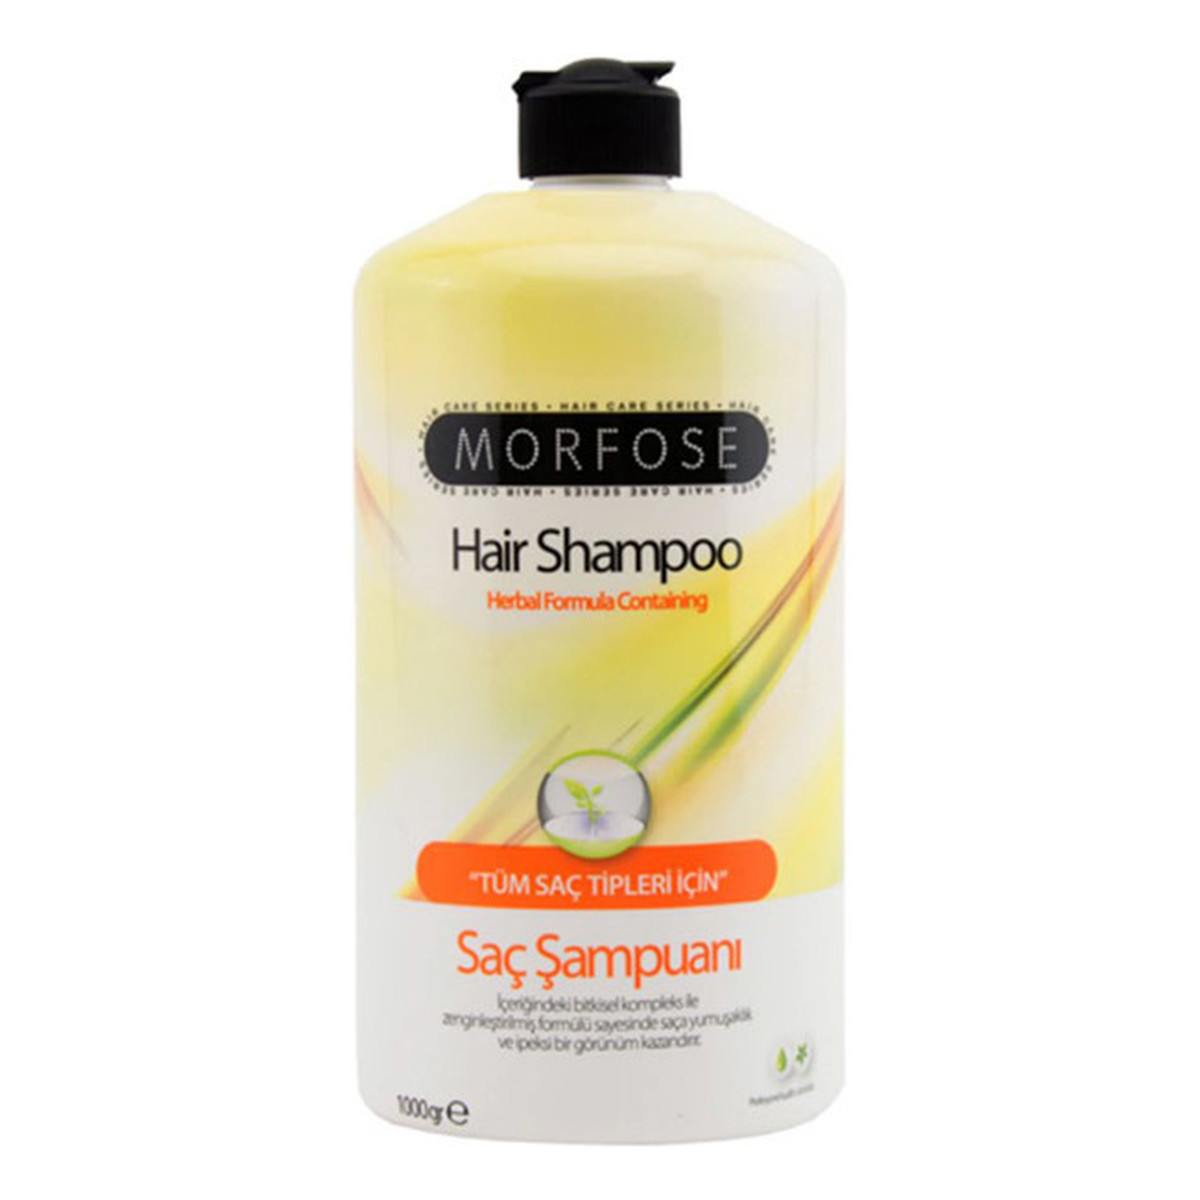 morfose szampon wizaz